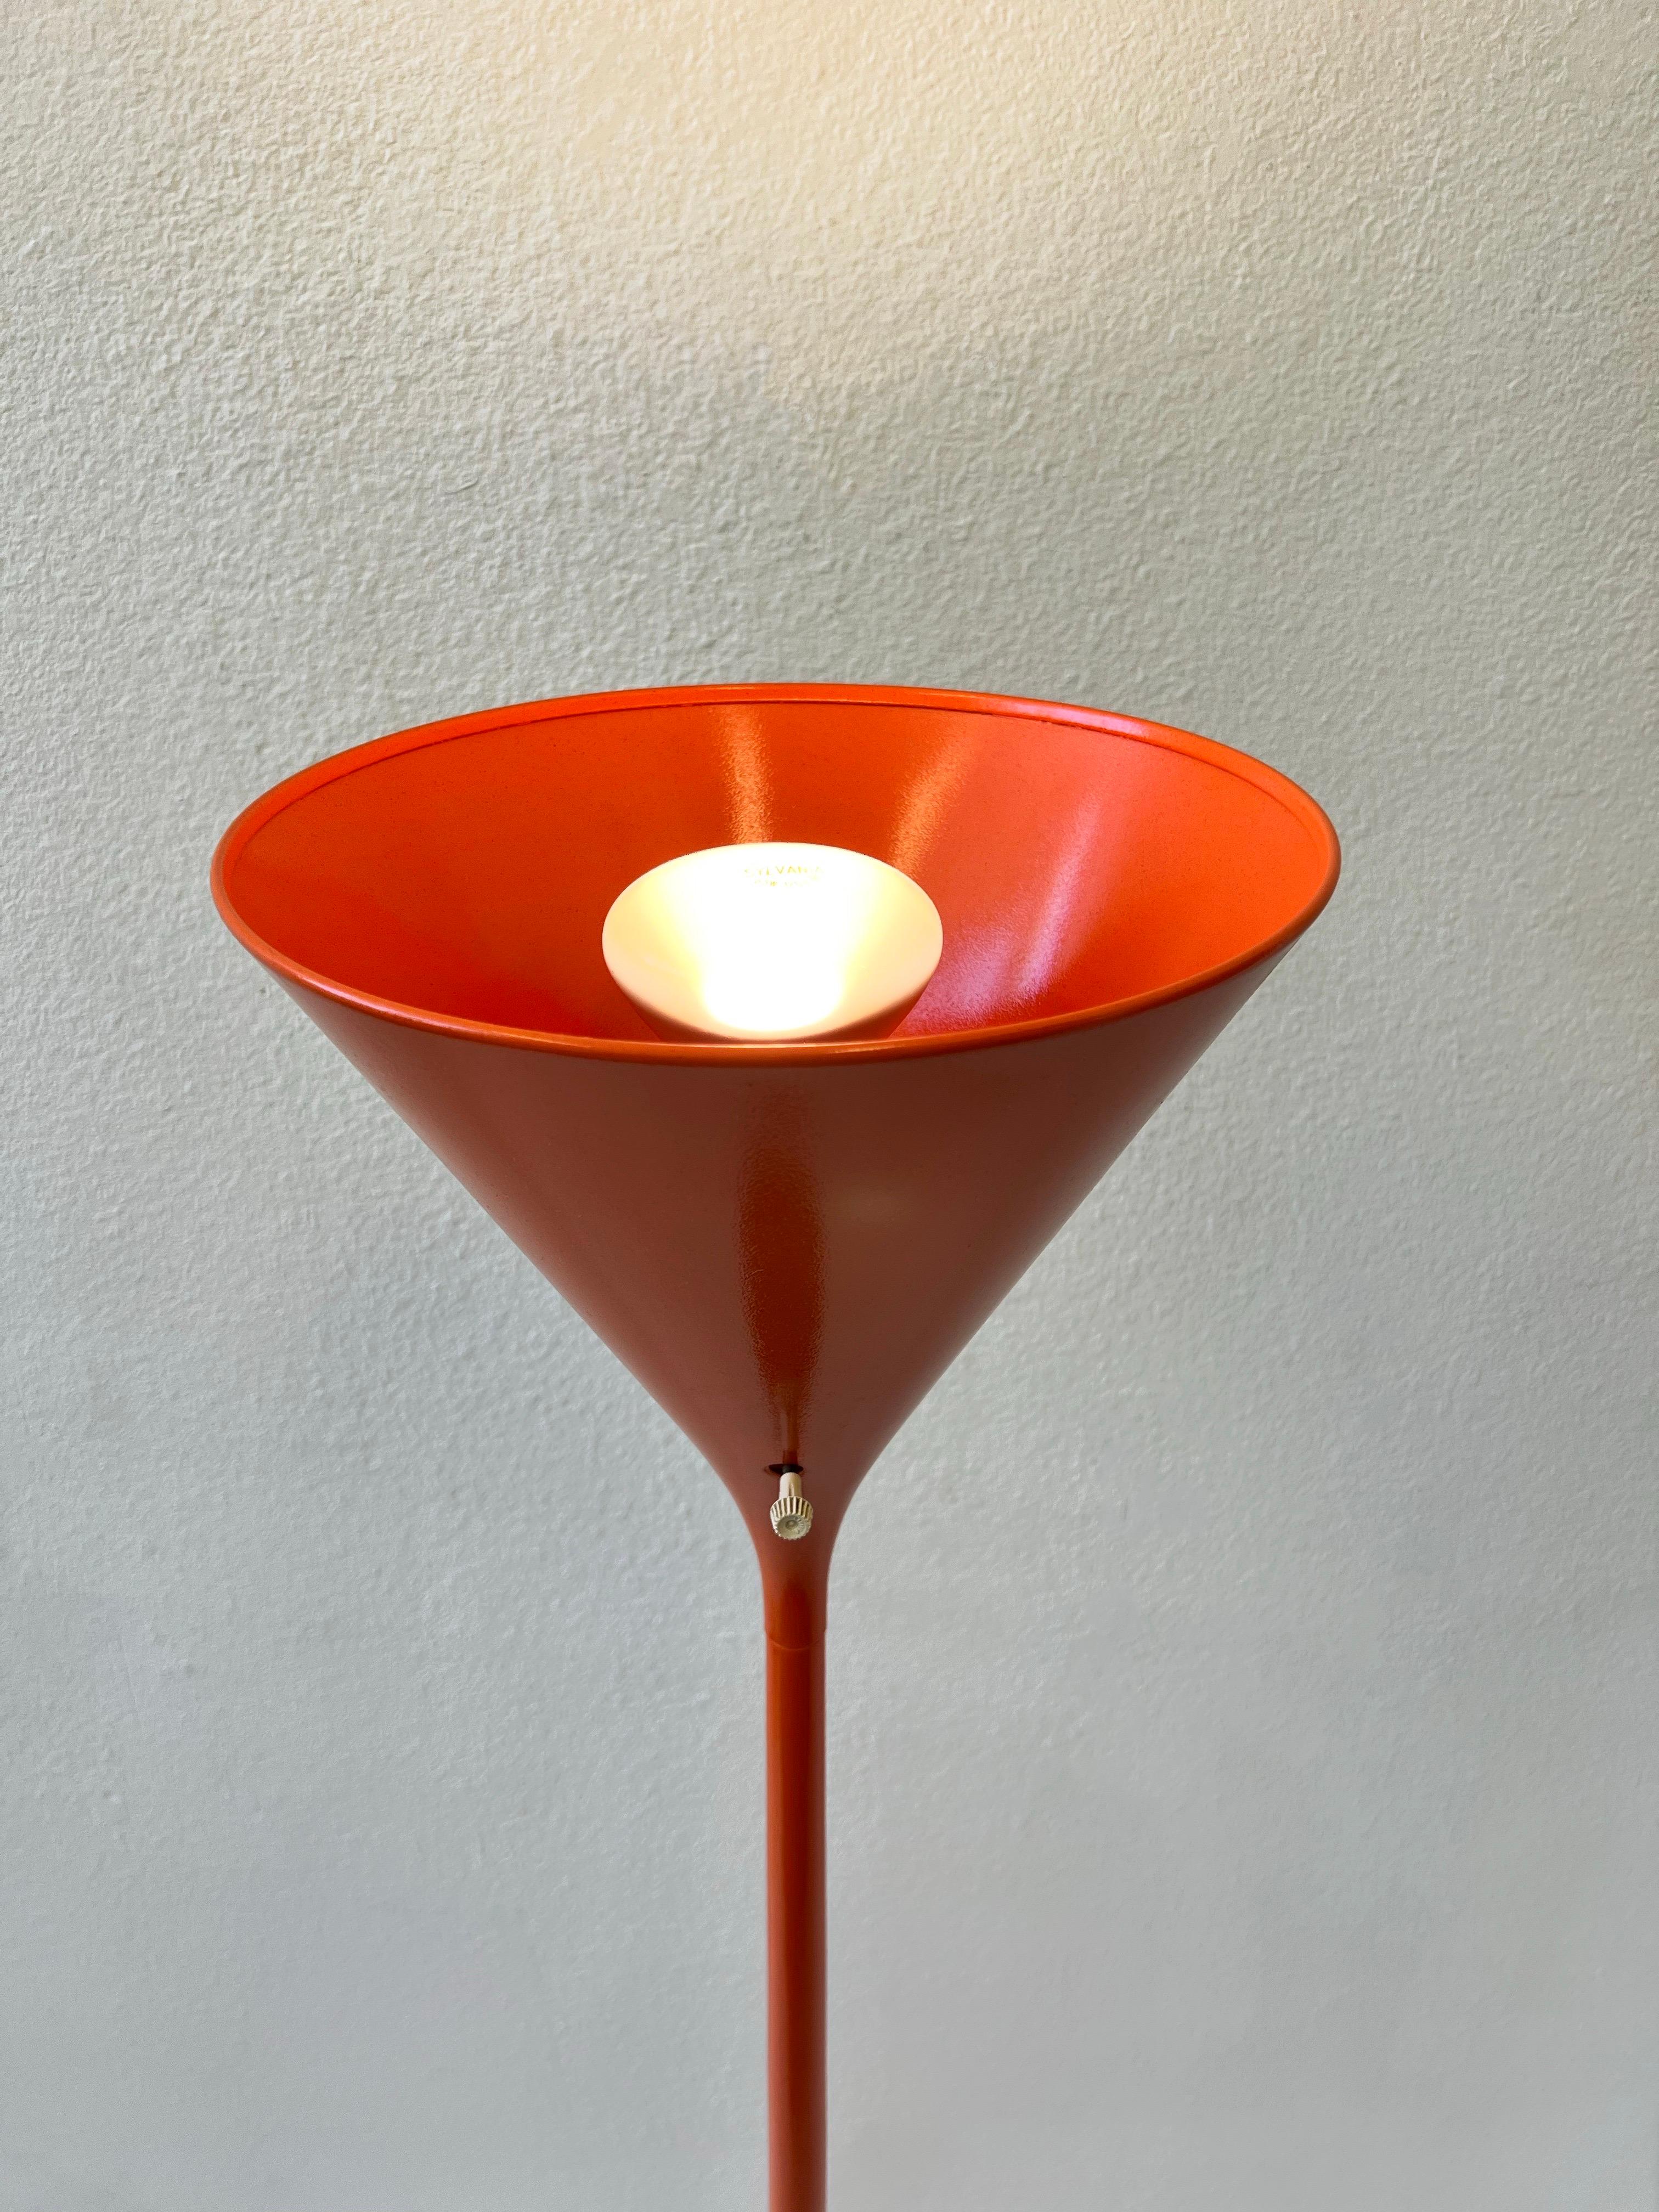 Mid-20th Century Pair of Orange Torchiere Floor Lamps by Walter Von Nessen